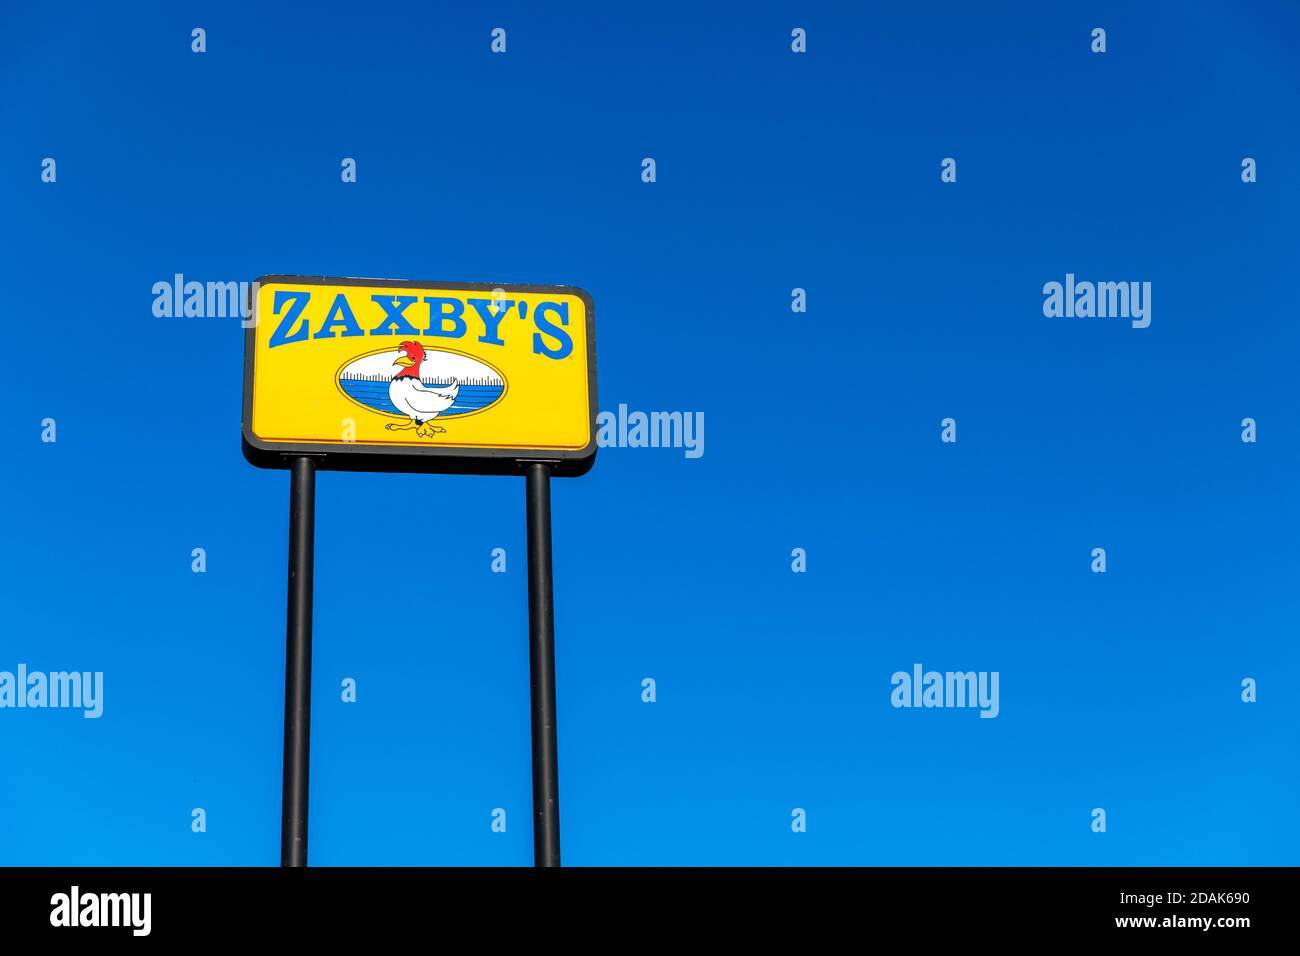 Atlanta, GA / USA - 29 ottobre 2020: Cartello del ristorante Zaxby's, una catena di fast food che serve pollo fritto e una varietà di altri prodotti alimentari. Foto Stock